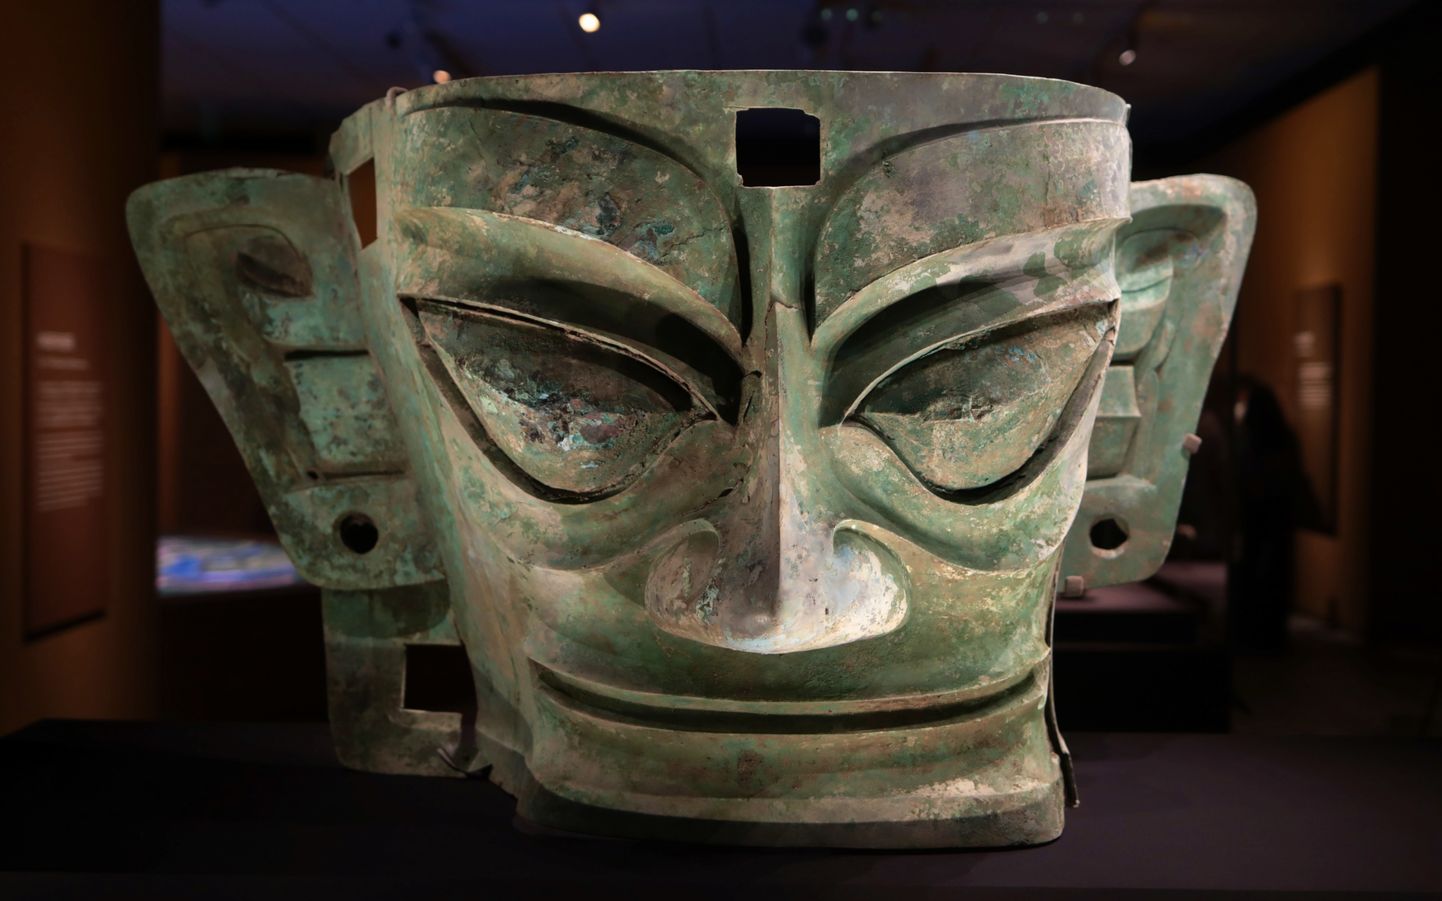 Hiinas Hongkongis saab näha Sanxingdui väljakaevamiskohast leitud iidse ja müstilise Shu kuningriigi esemeid, kaasa arvatud suuri maske.